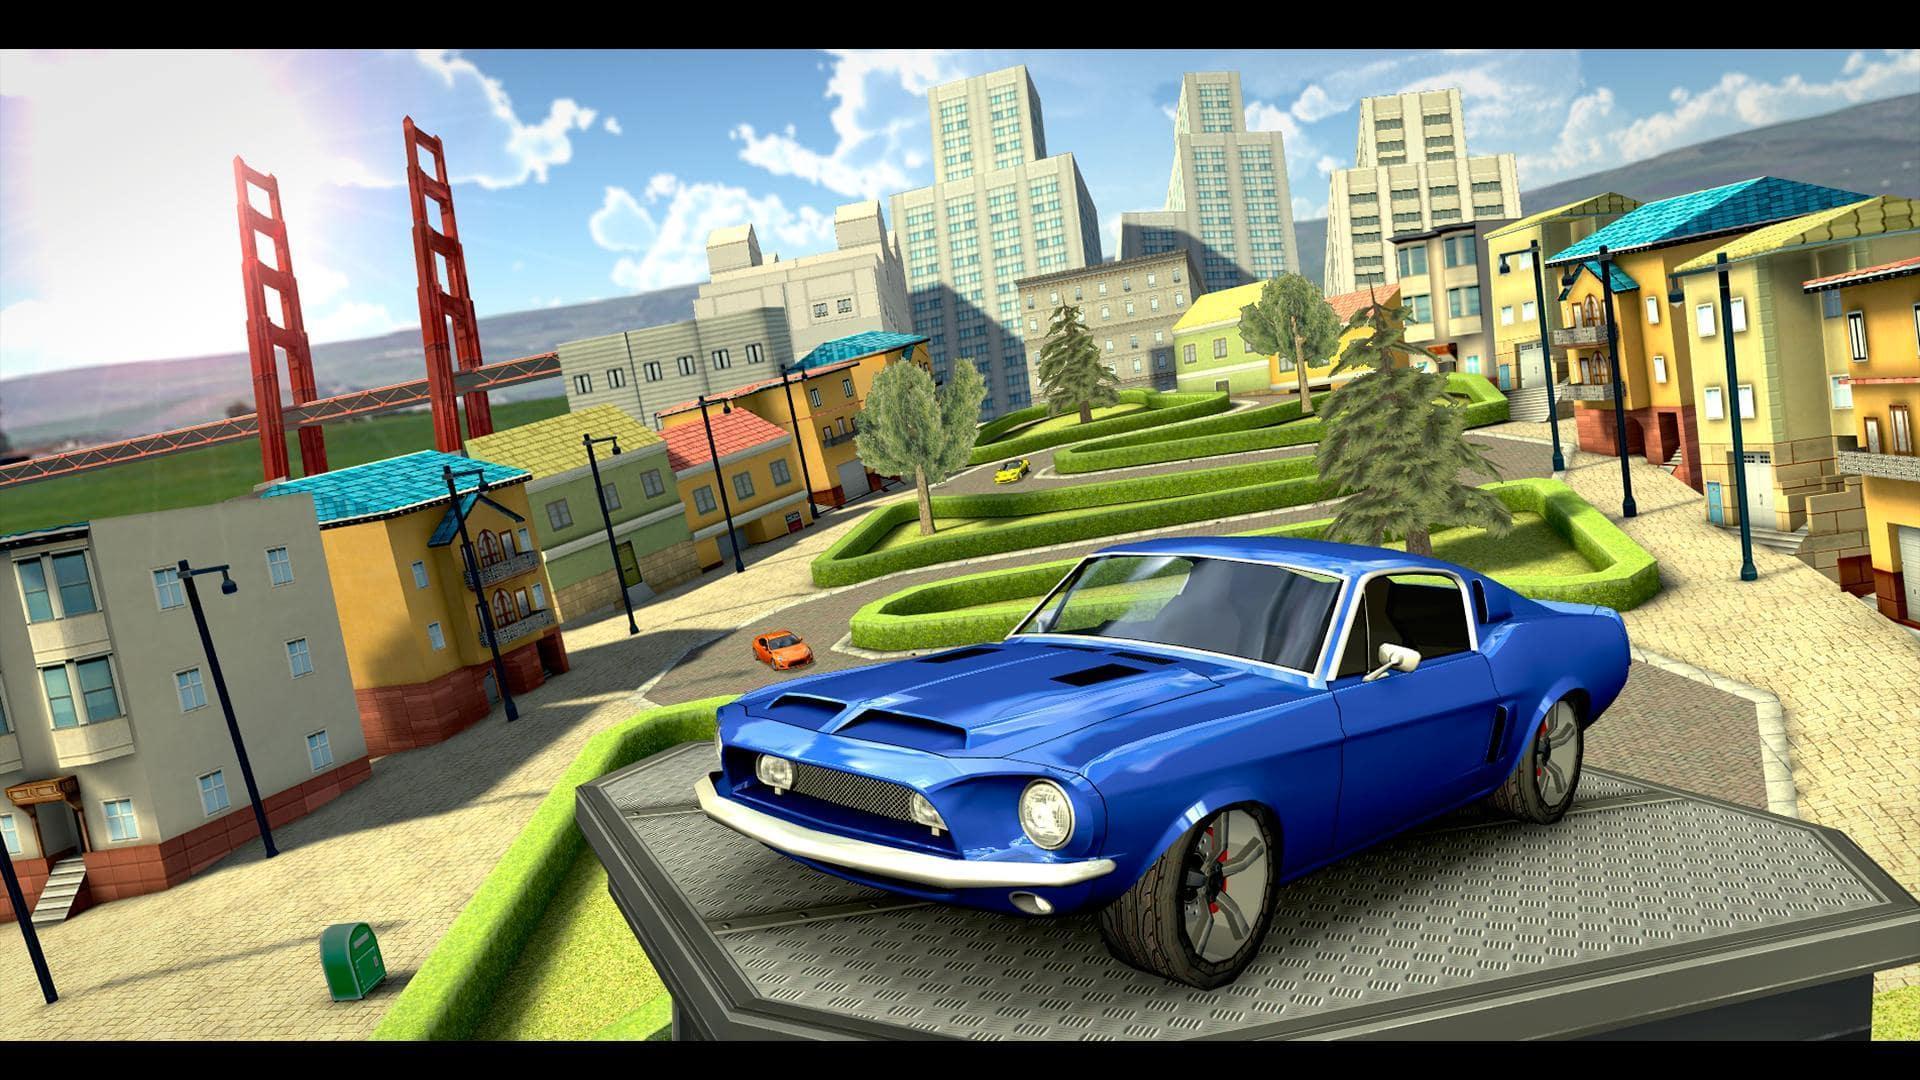 Screenshot 1 of Simulador de conducción de automóviles extremos 1.0